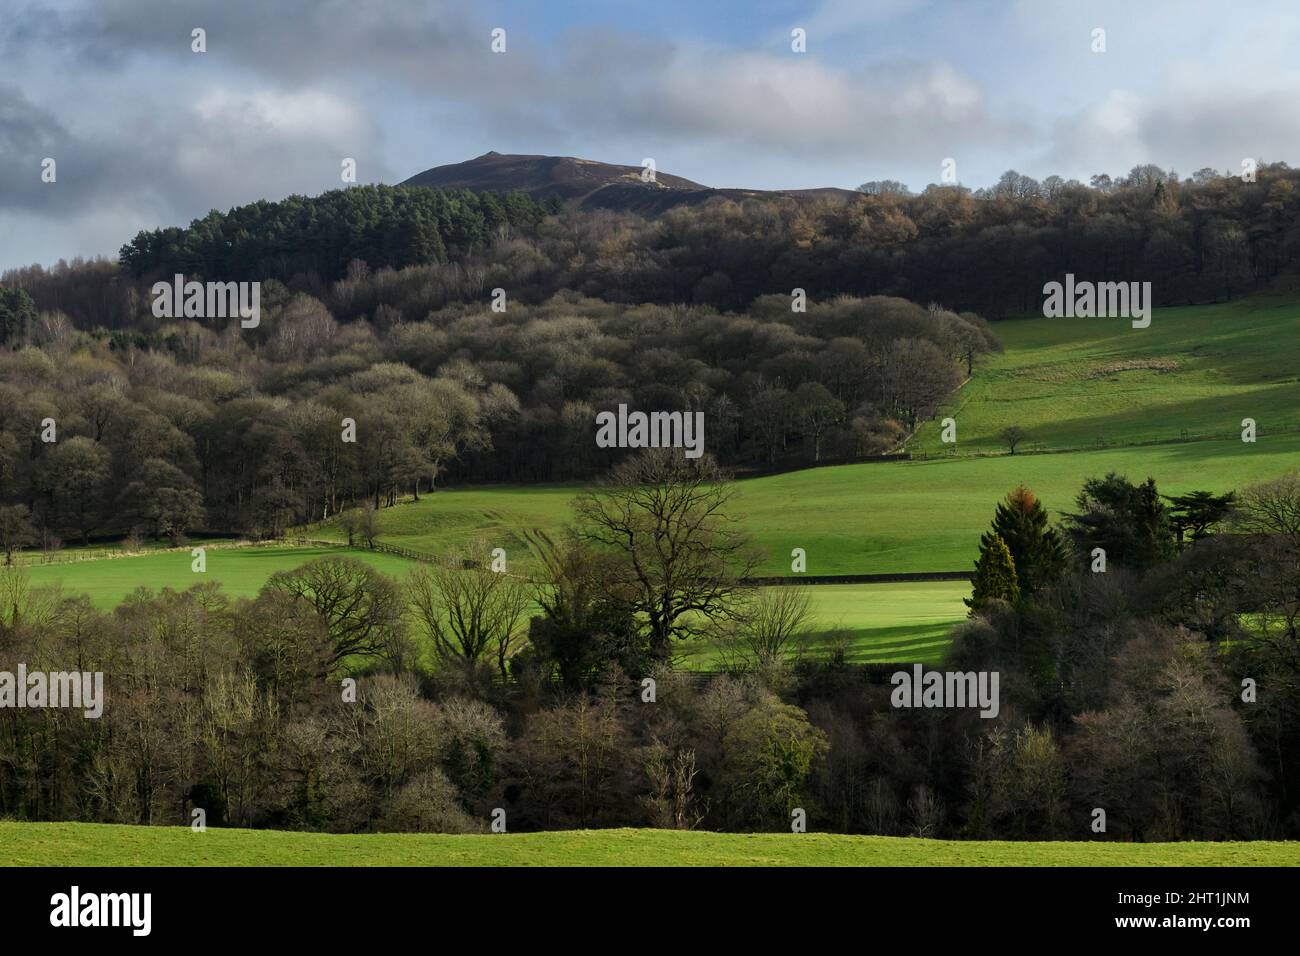 Vue rurale pittoresque sur la vallée boisée, les arbres boisés sur une colline escarpée, les collines et le sommet élevé de Howber Hill - North Yorkshire, Angleterre, Royaume-Uni. Banque D'Images